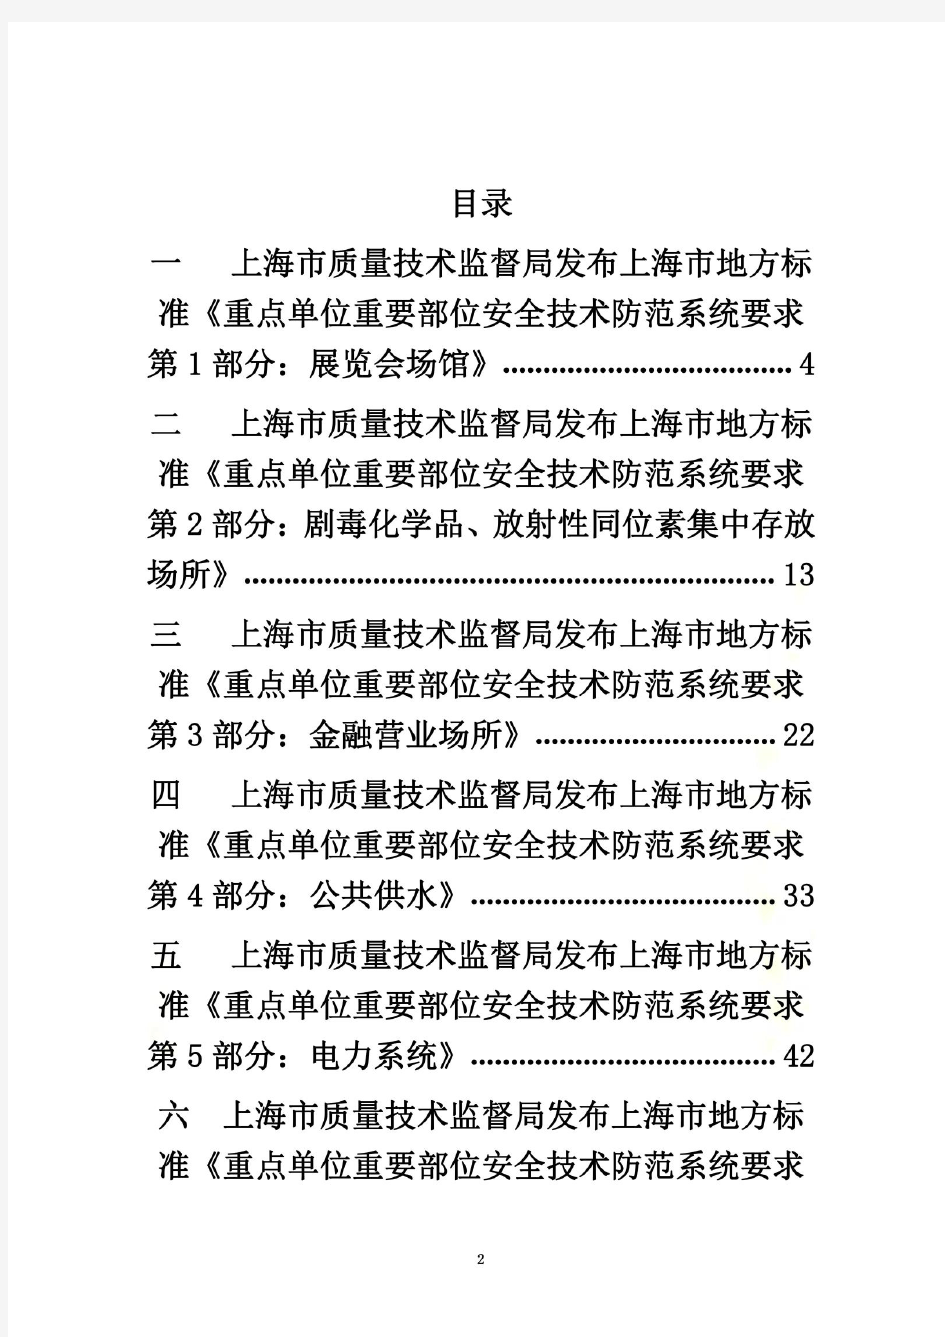 上海市质量技术监督局发布上海市地方标准《重点单位重要部位安全技术防范系统要求